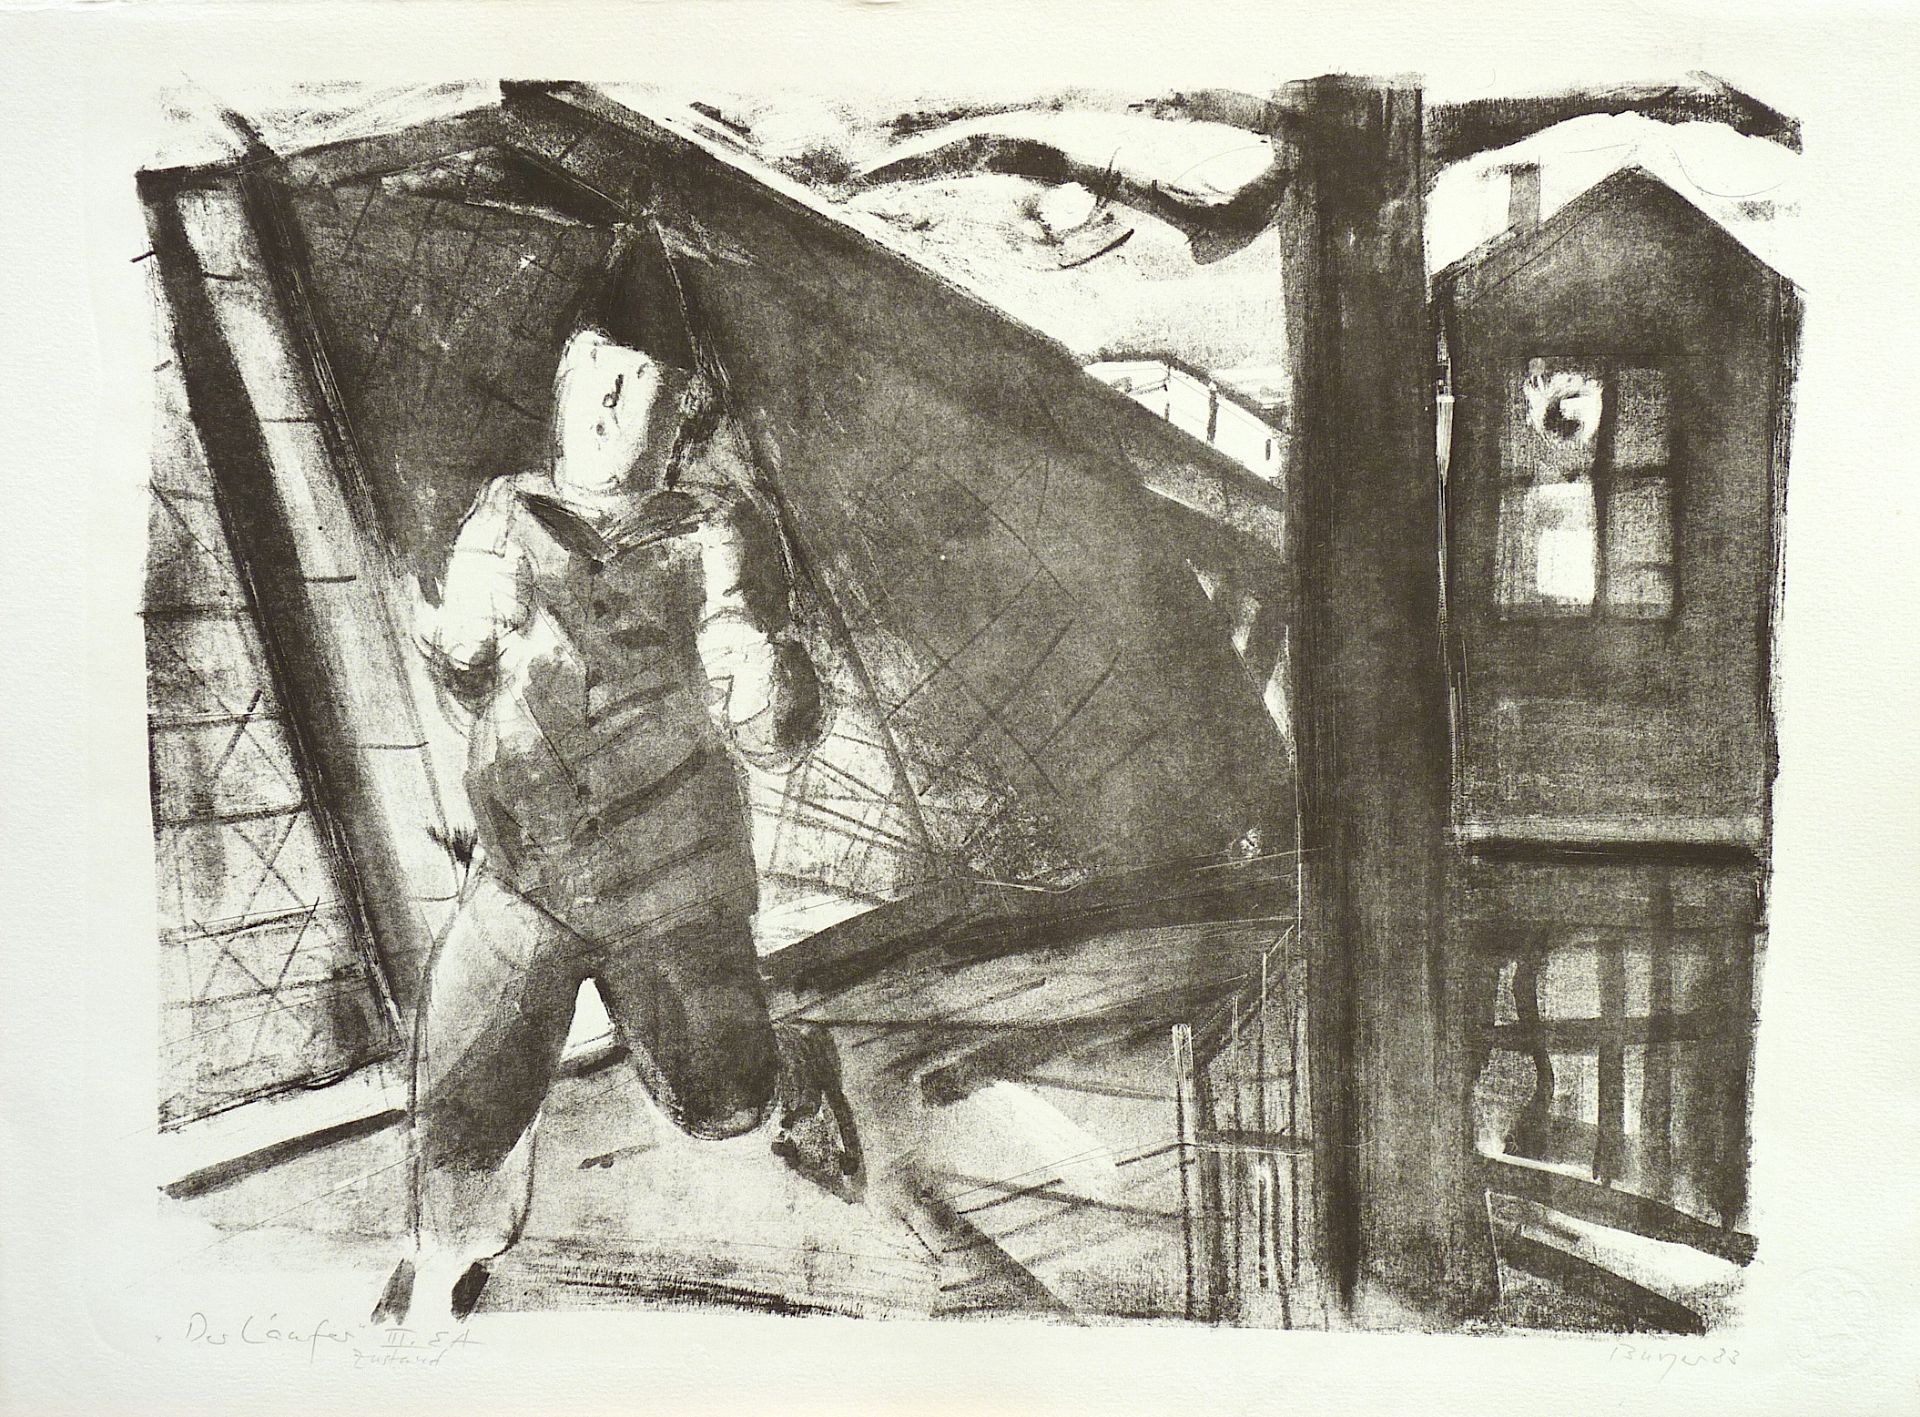 BURGER, DIETRICH: "Der Läufer", 1983